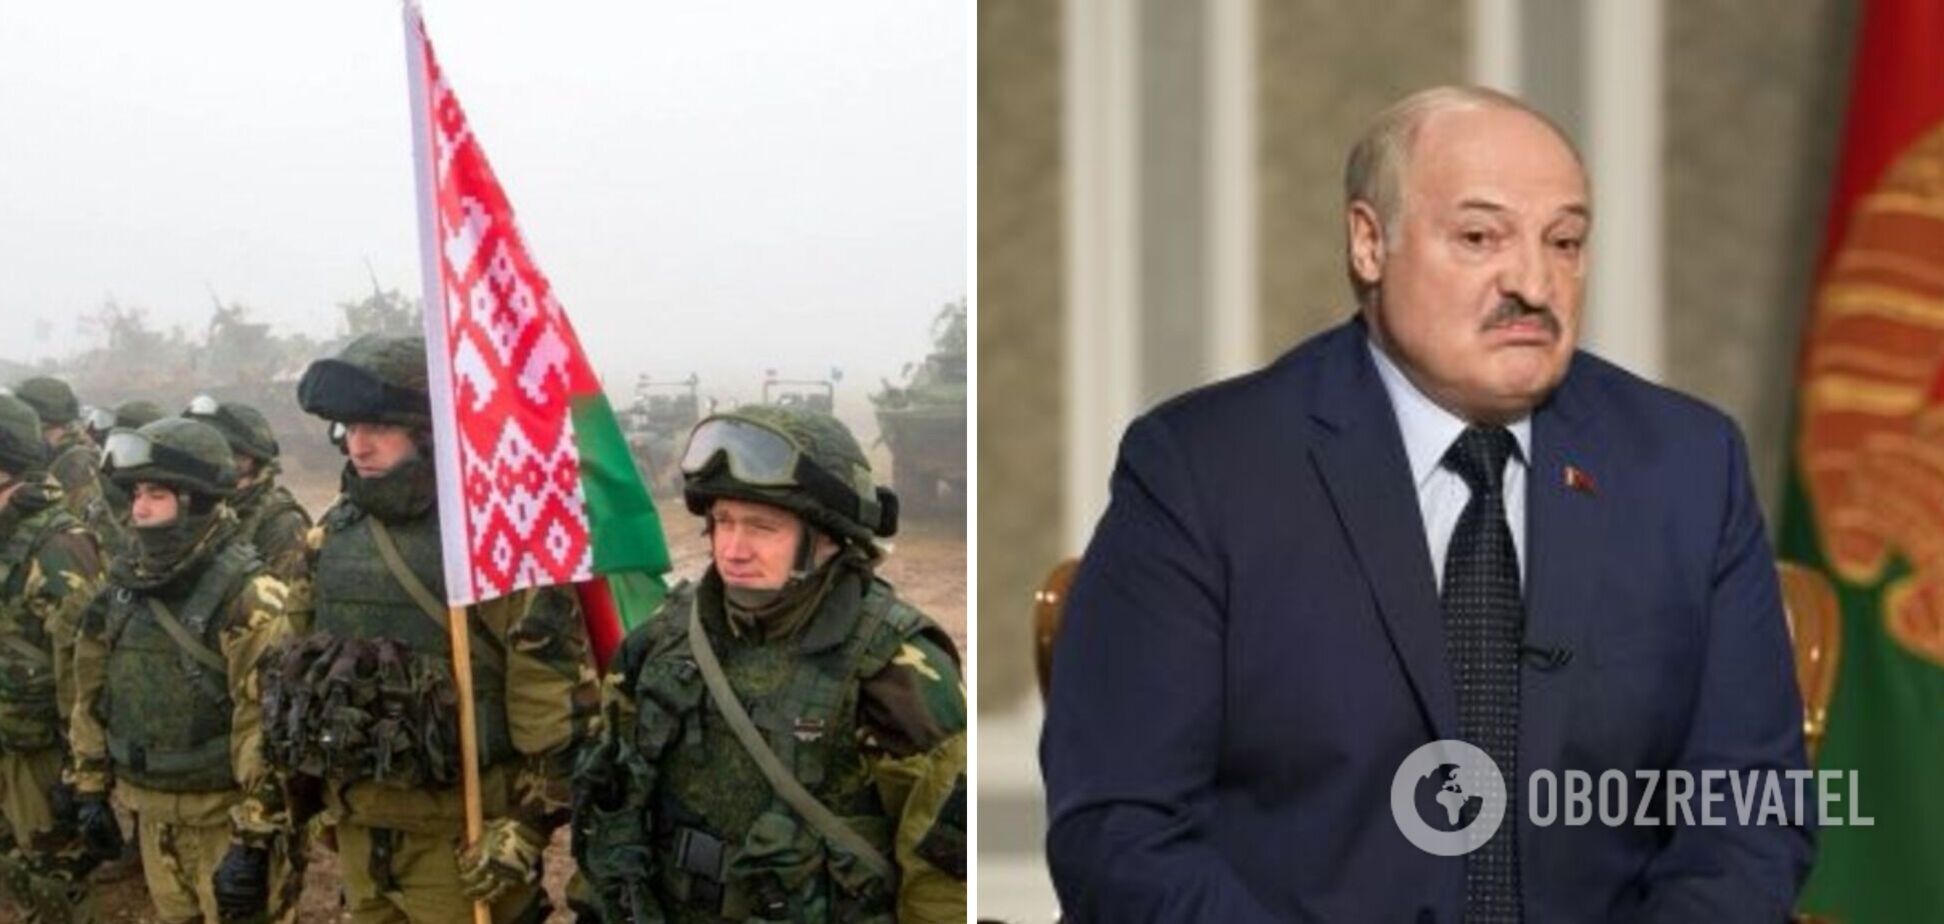 Лукашенко запутанно 'объяснил', будет ли устраивать мобилизацию вслед за РФ, и вспомнил о террористических угрозах